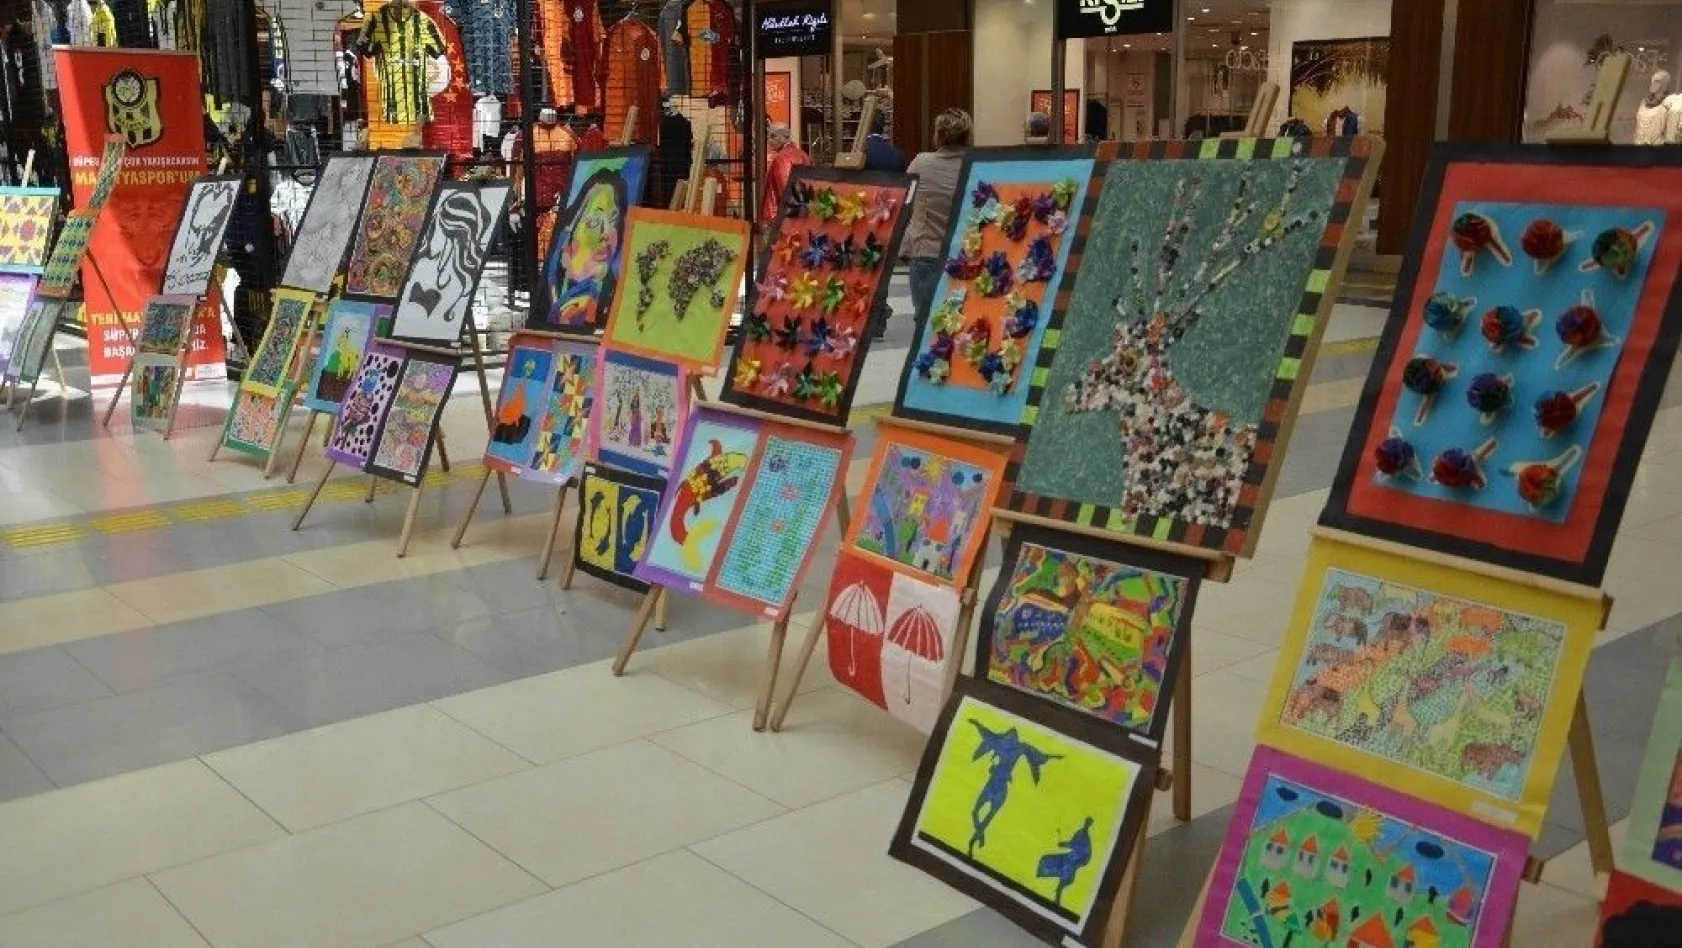 Köy öğrencilerinin hazırladığı el sanatları sergisi yoğun ilgi gördü
